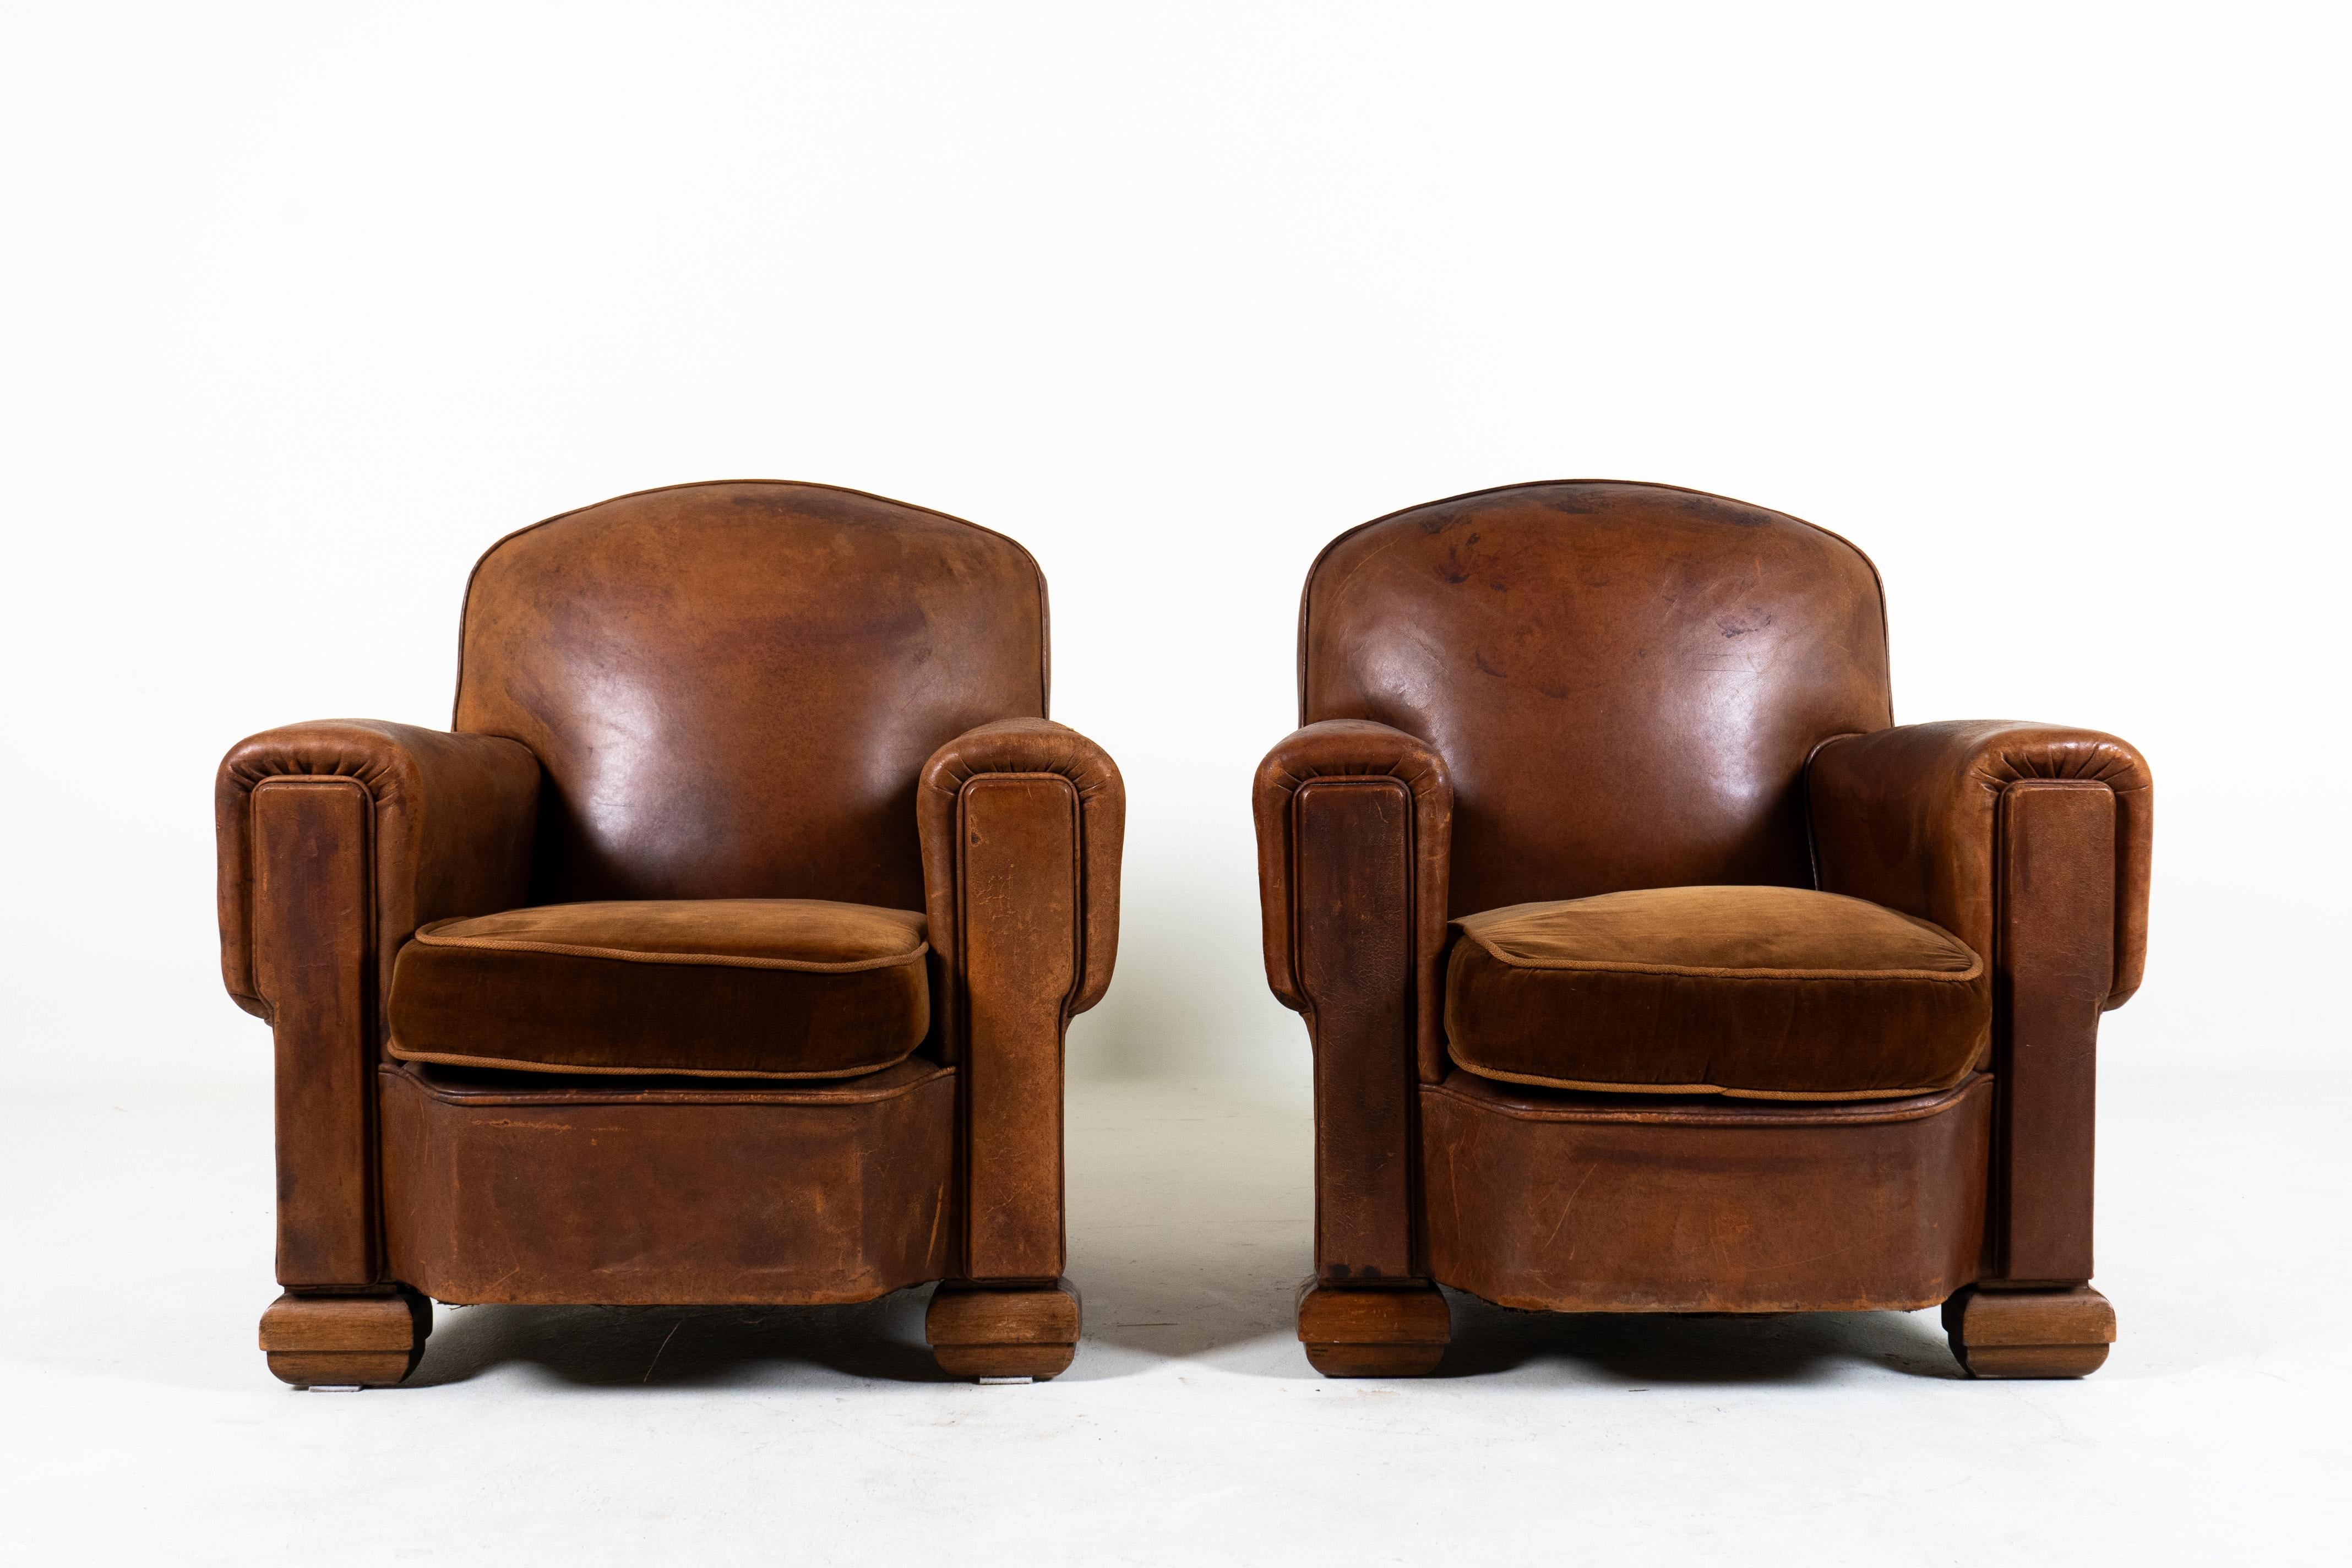 Cette paire de fauteuils club vintage Art of Vintage date de la fin de l'époque. Avec un design qui remonte à la période Art déco des années 1920-1940, ces chaises représentent l'aboutissement simplifié et rationalisé d'une ère d'élégance et de